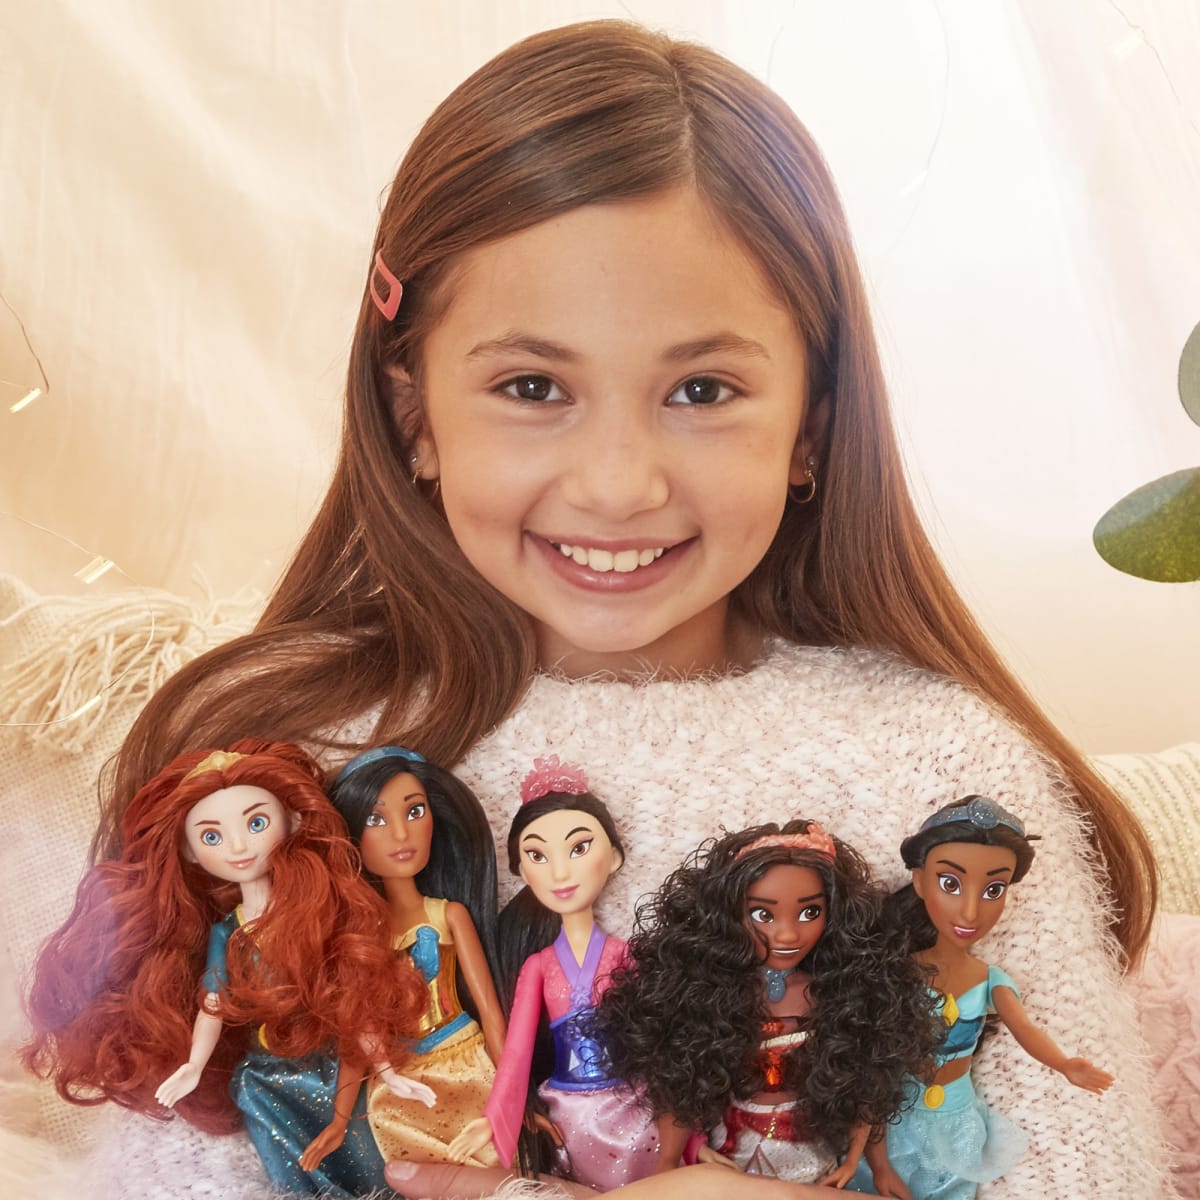 Disney Princess Doll Vaiana Royal Shimmer